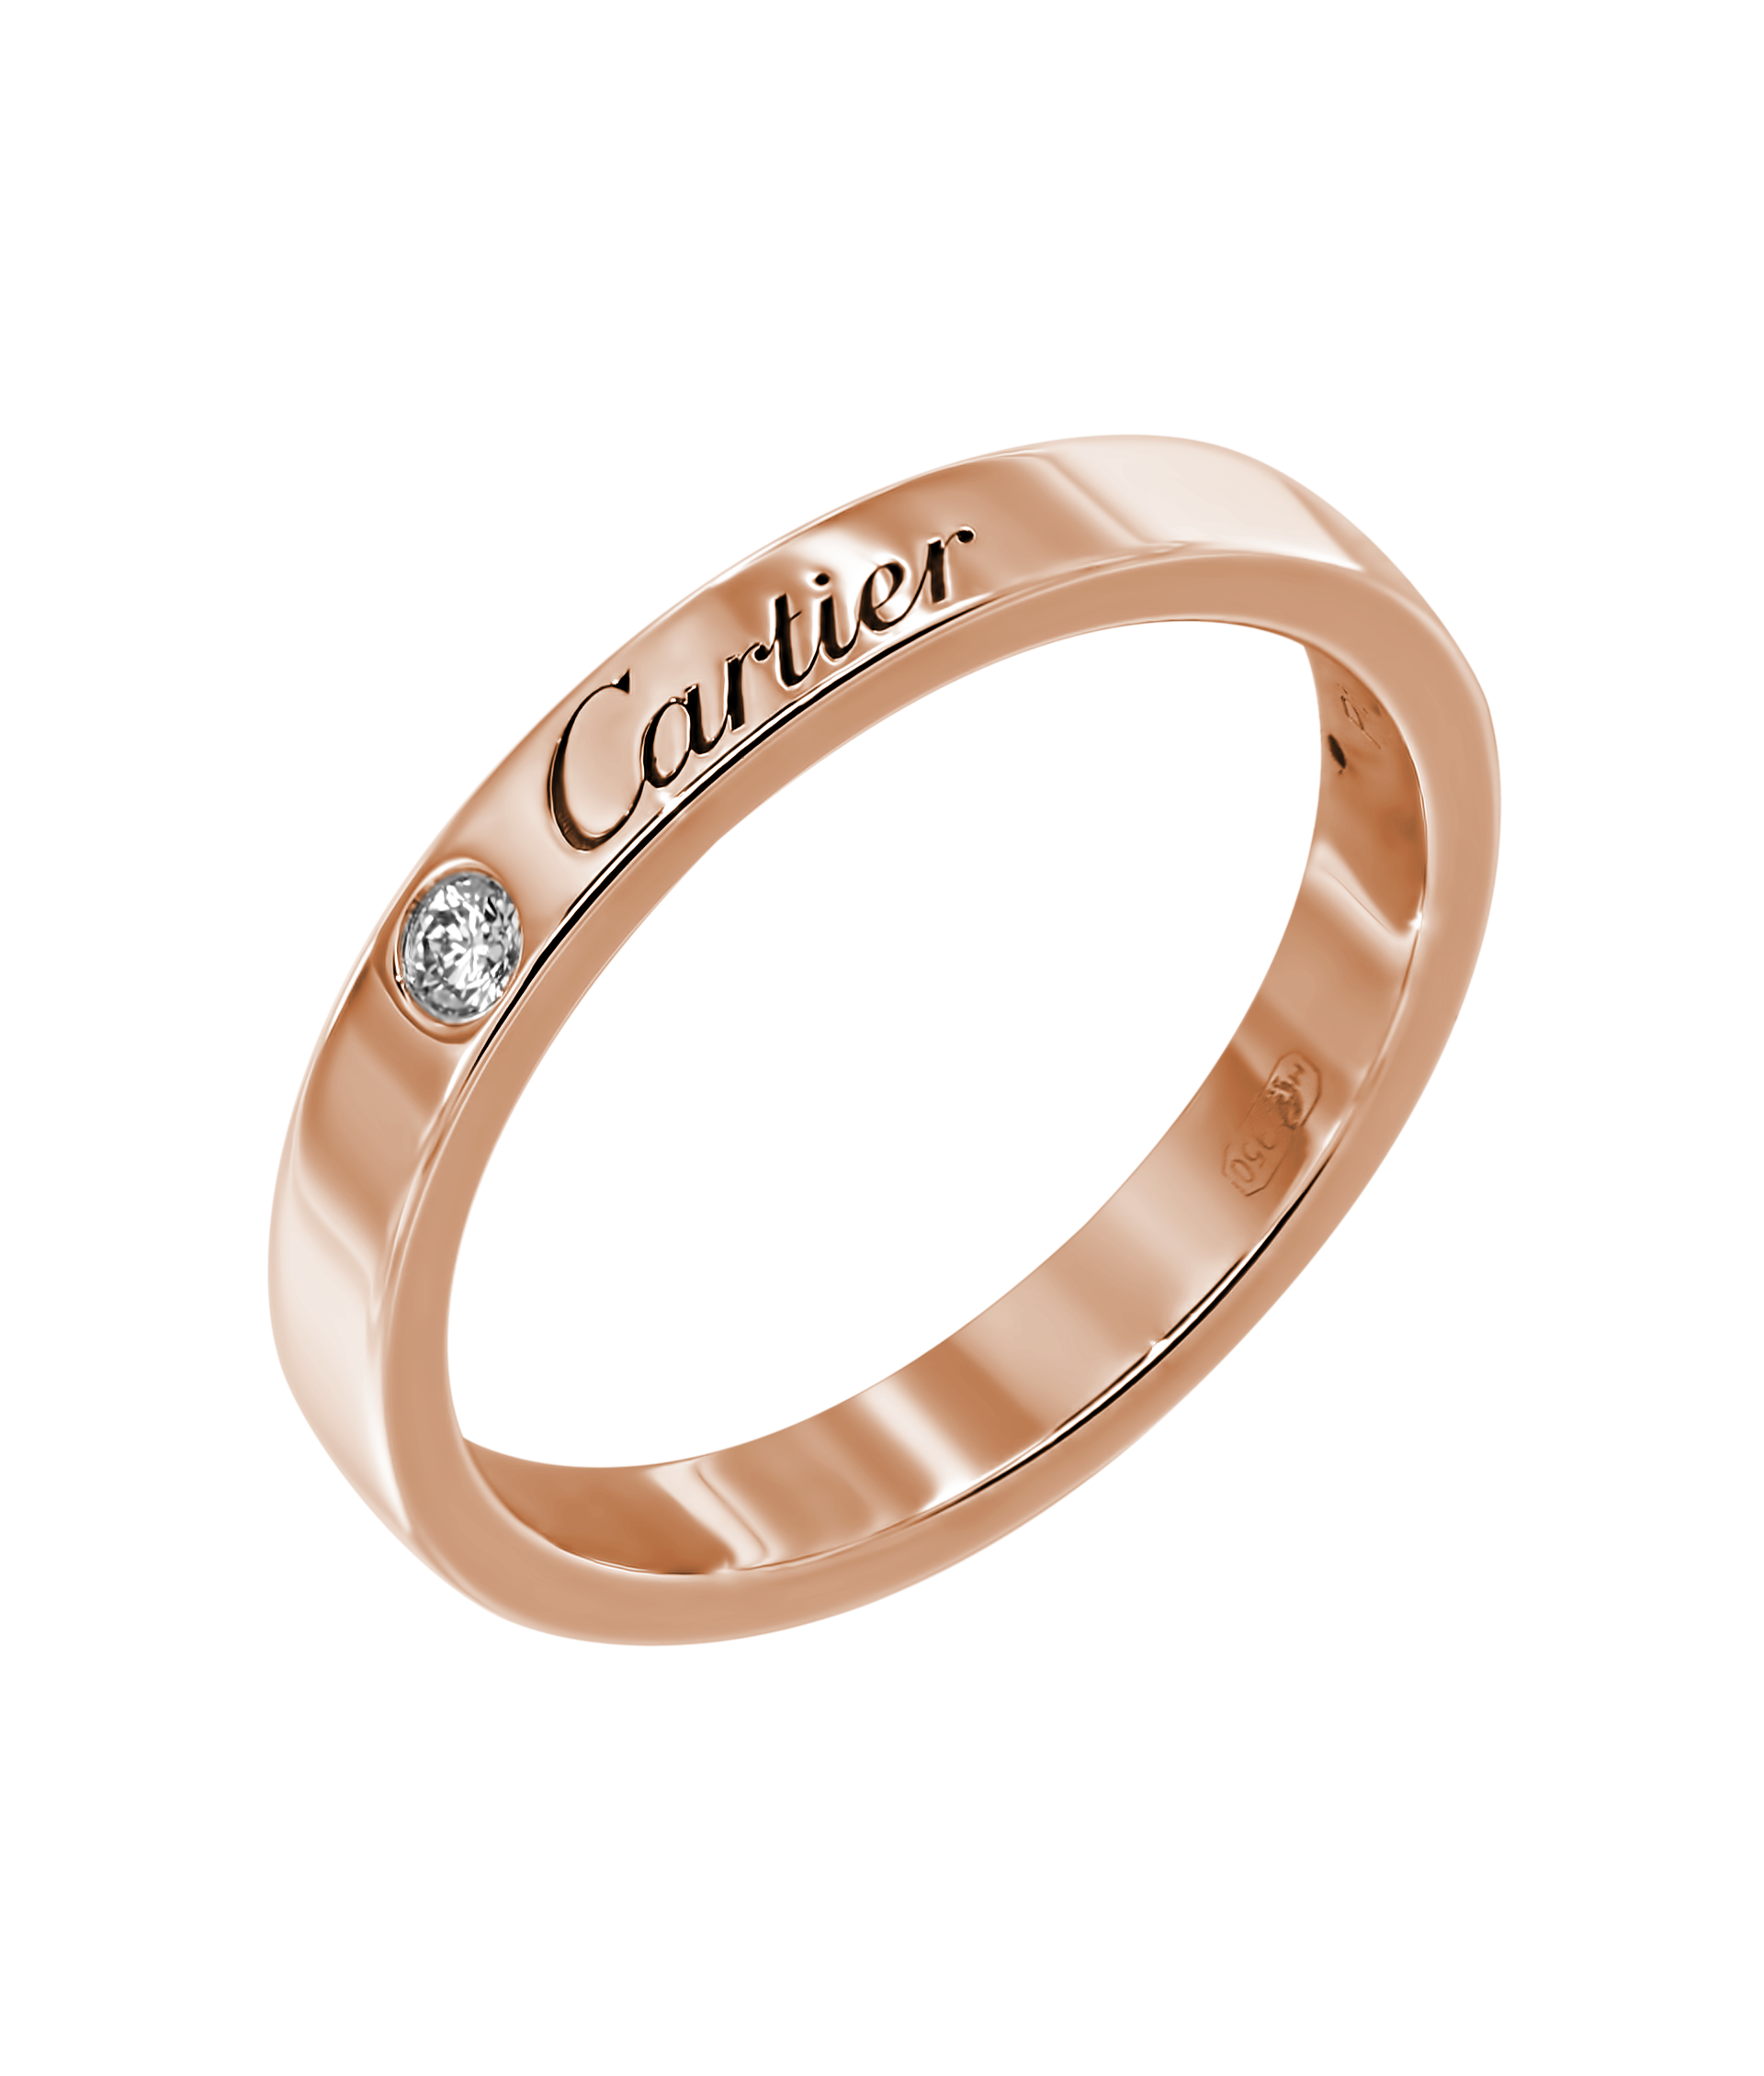 Золото проба 3. Проба 750 золото Cartier. Кольцо Картье розовое золото. Картье кольцо 750 пробы кольцо. Cartier кольцо 750 проба.